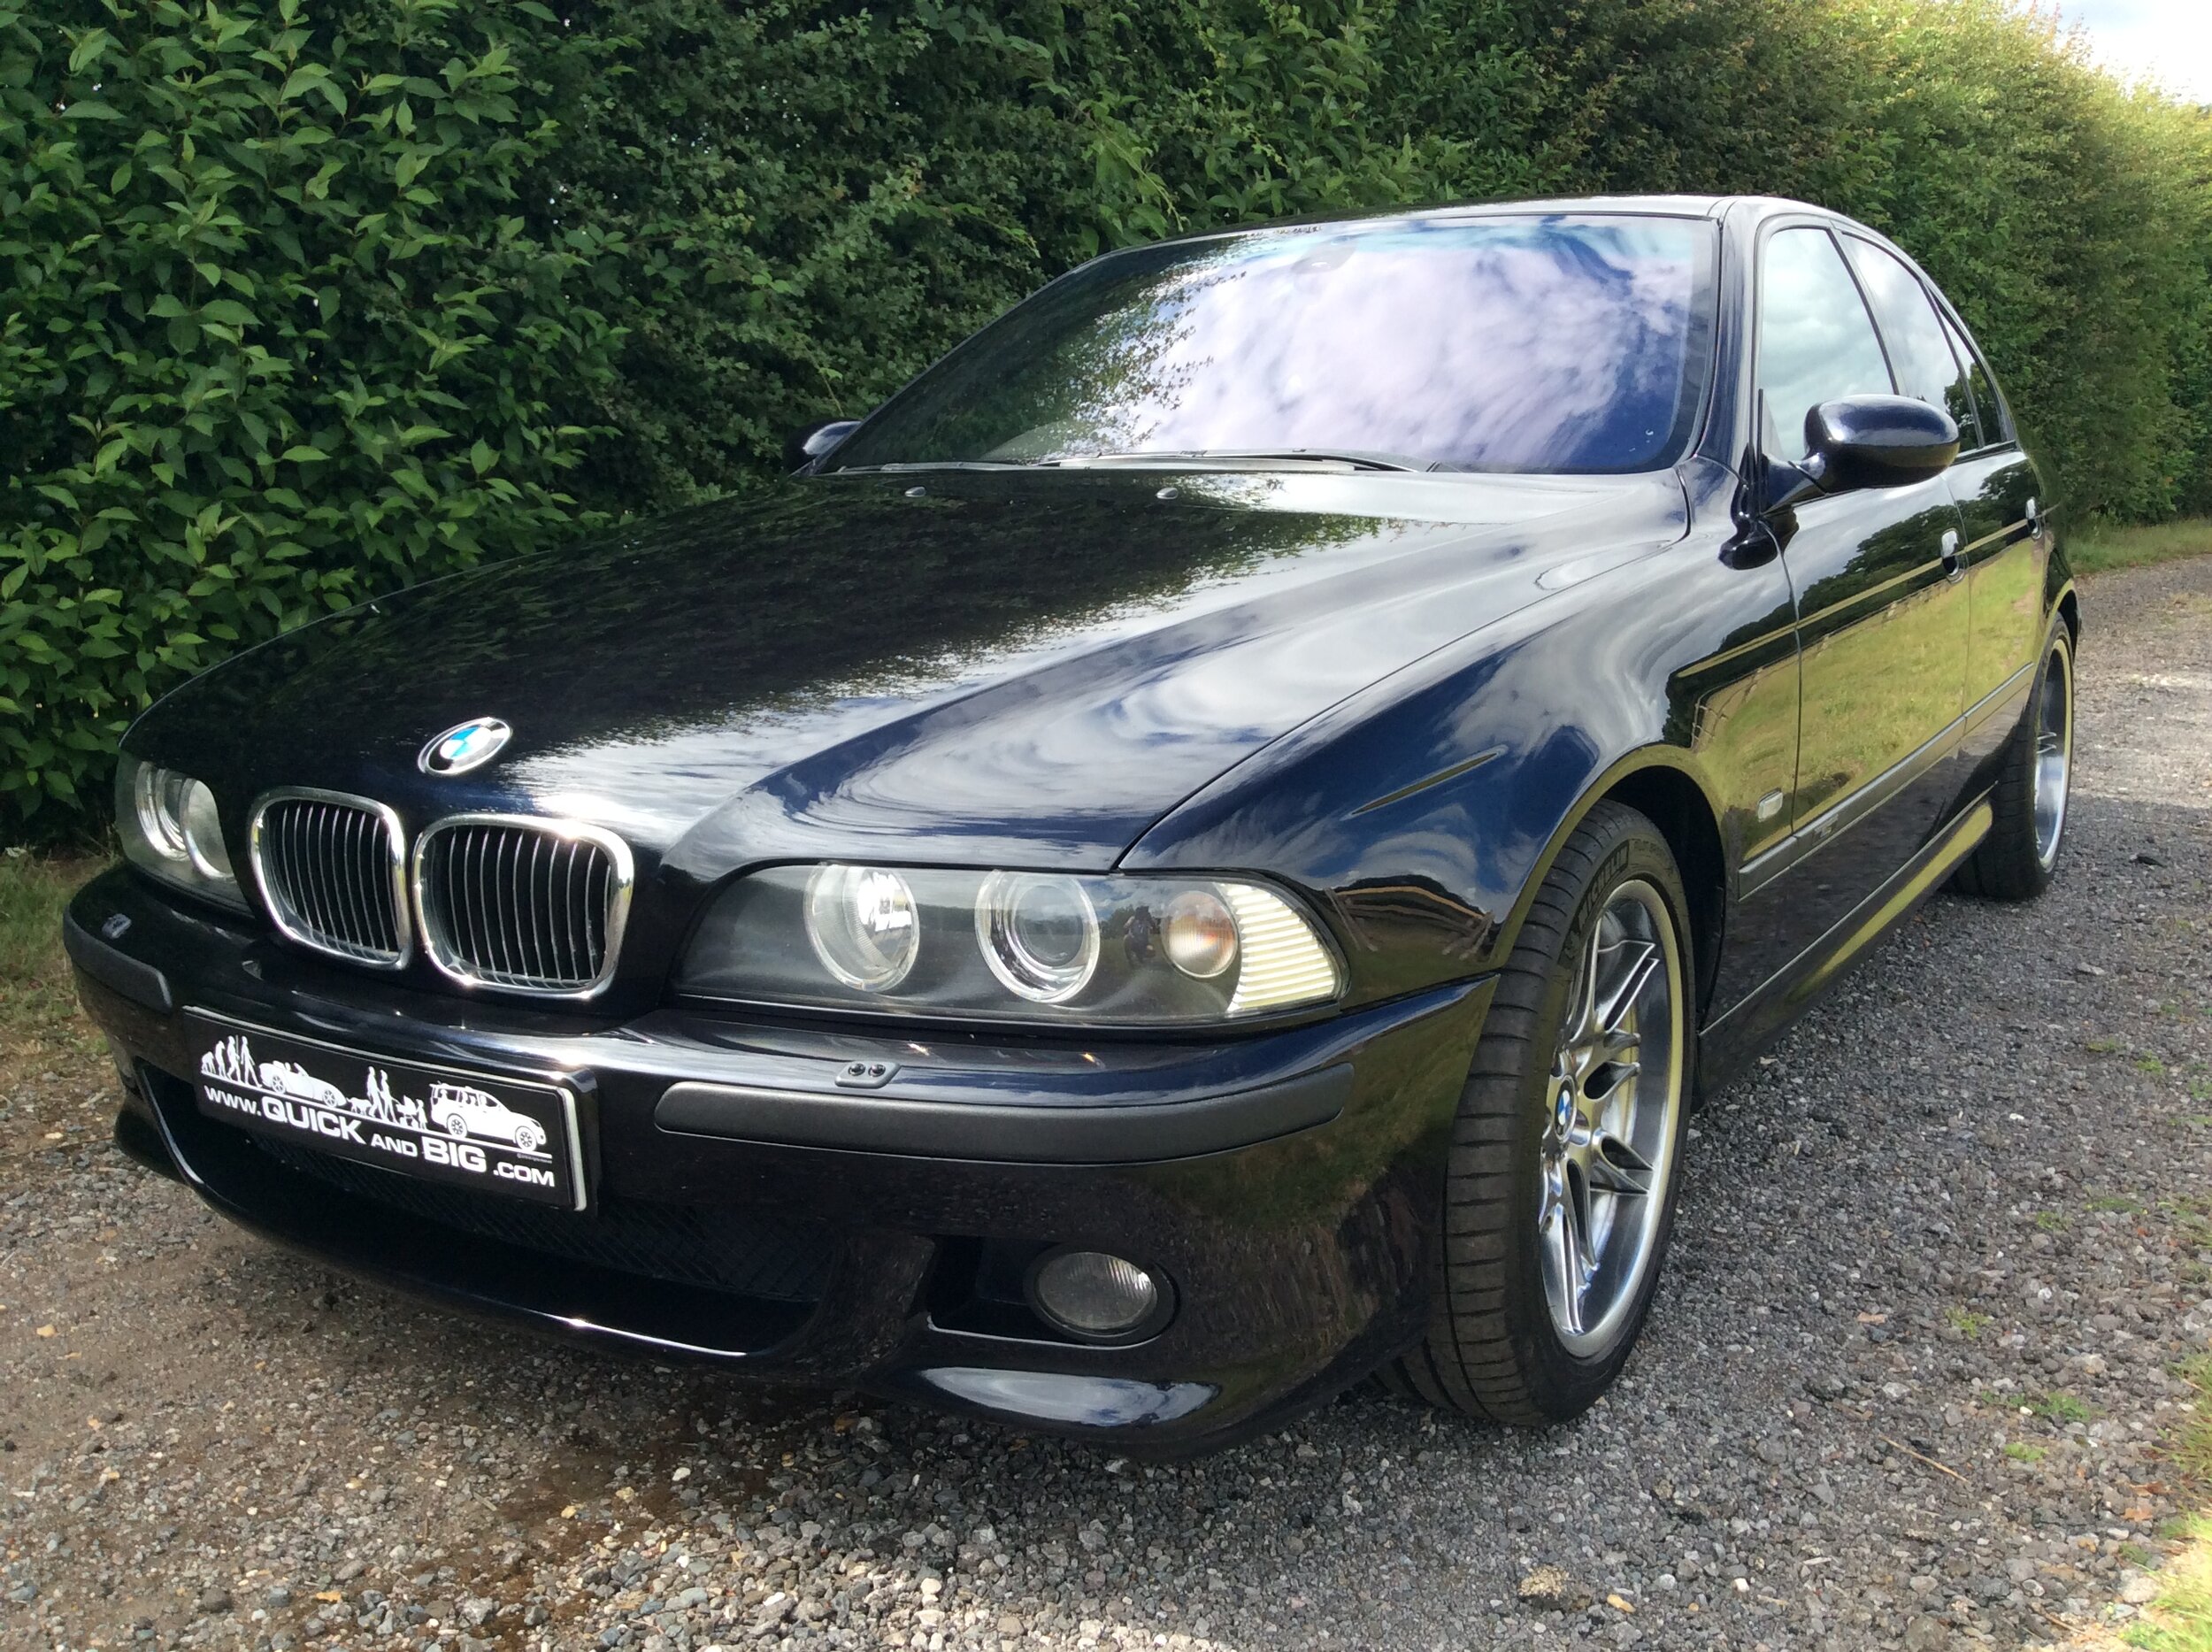 BMW E39 M5 - over £40k spent